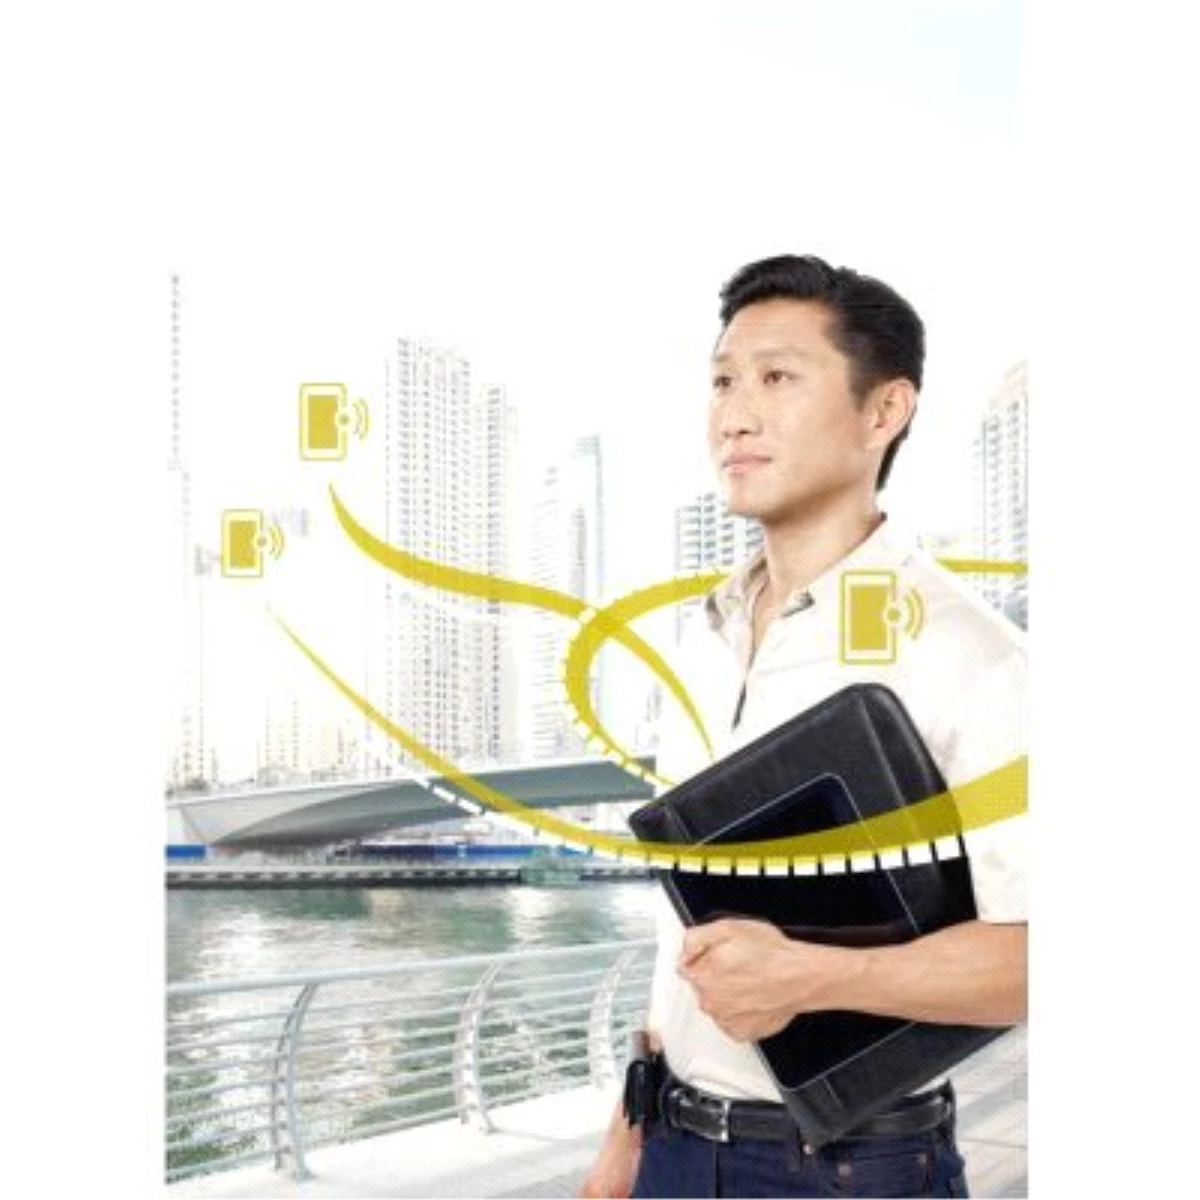 Remote Services Teknolojisini Tanıtan Bosch, Kullanıcılarına Hızlı ve Kesintisiz Hizmet Sağlayacak